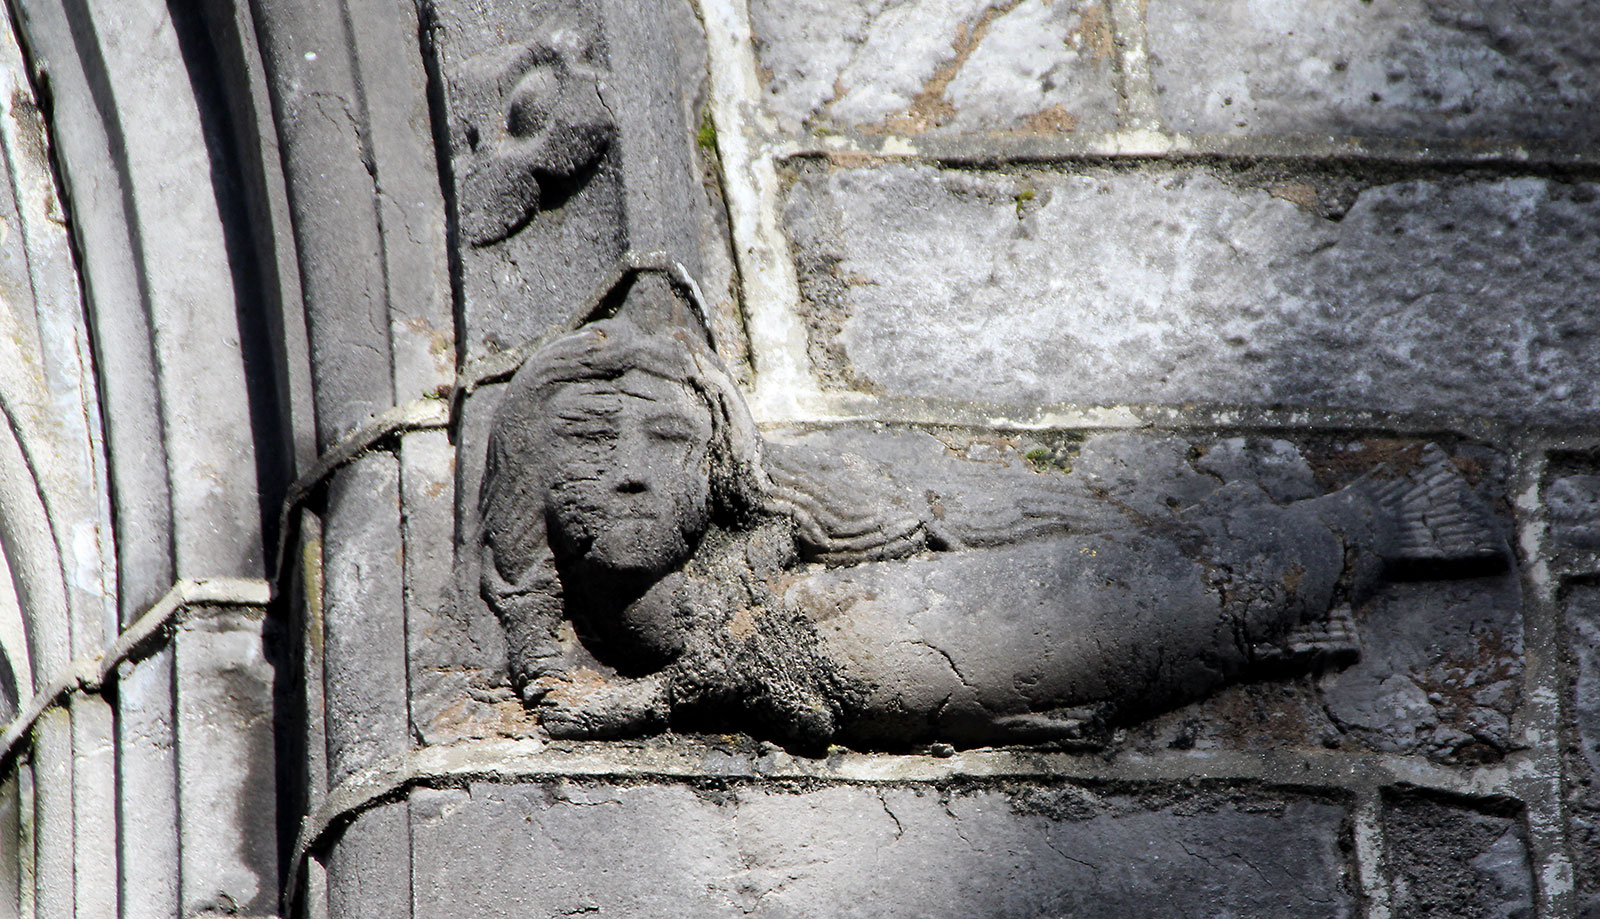 Mermaid carving in Galway City.